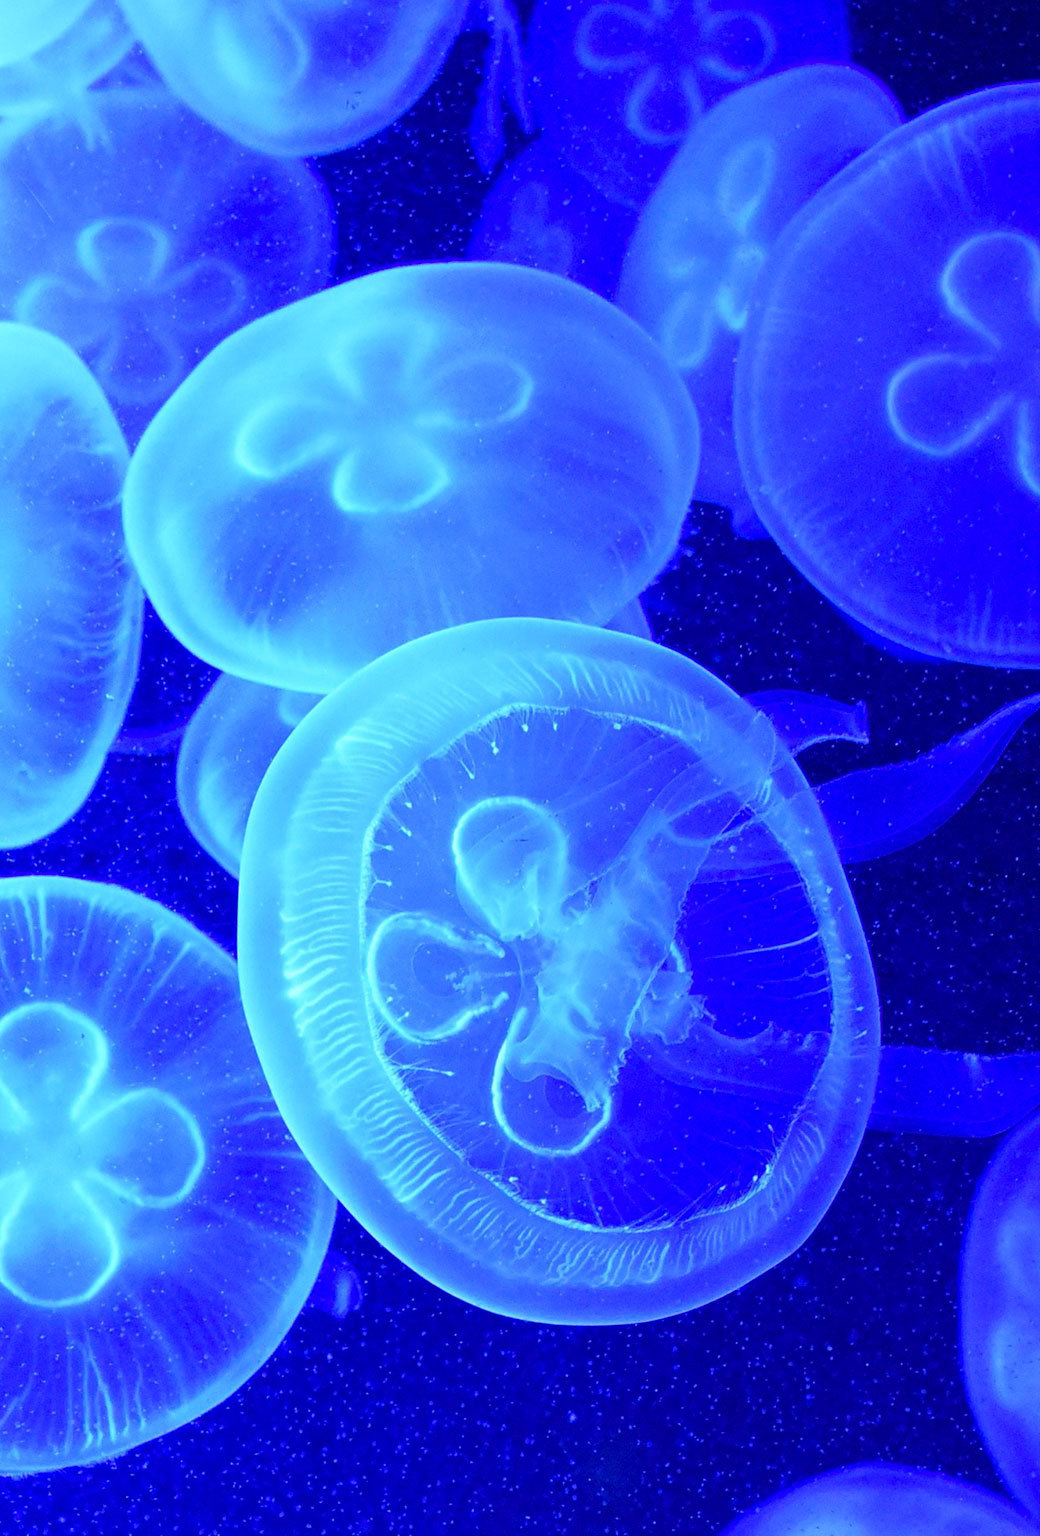 sfondi dalla ortografia alla z,blu,medusa,blu elettrico,acqua,cnidaria